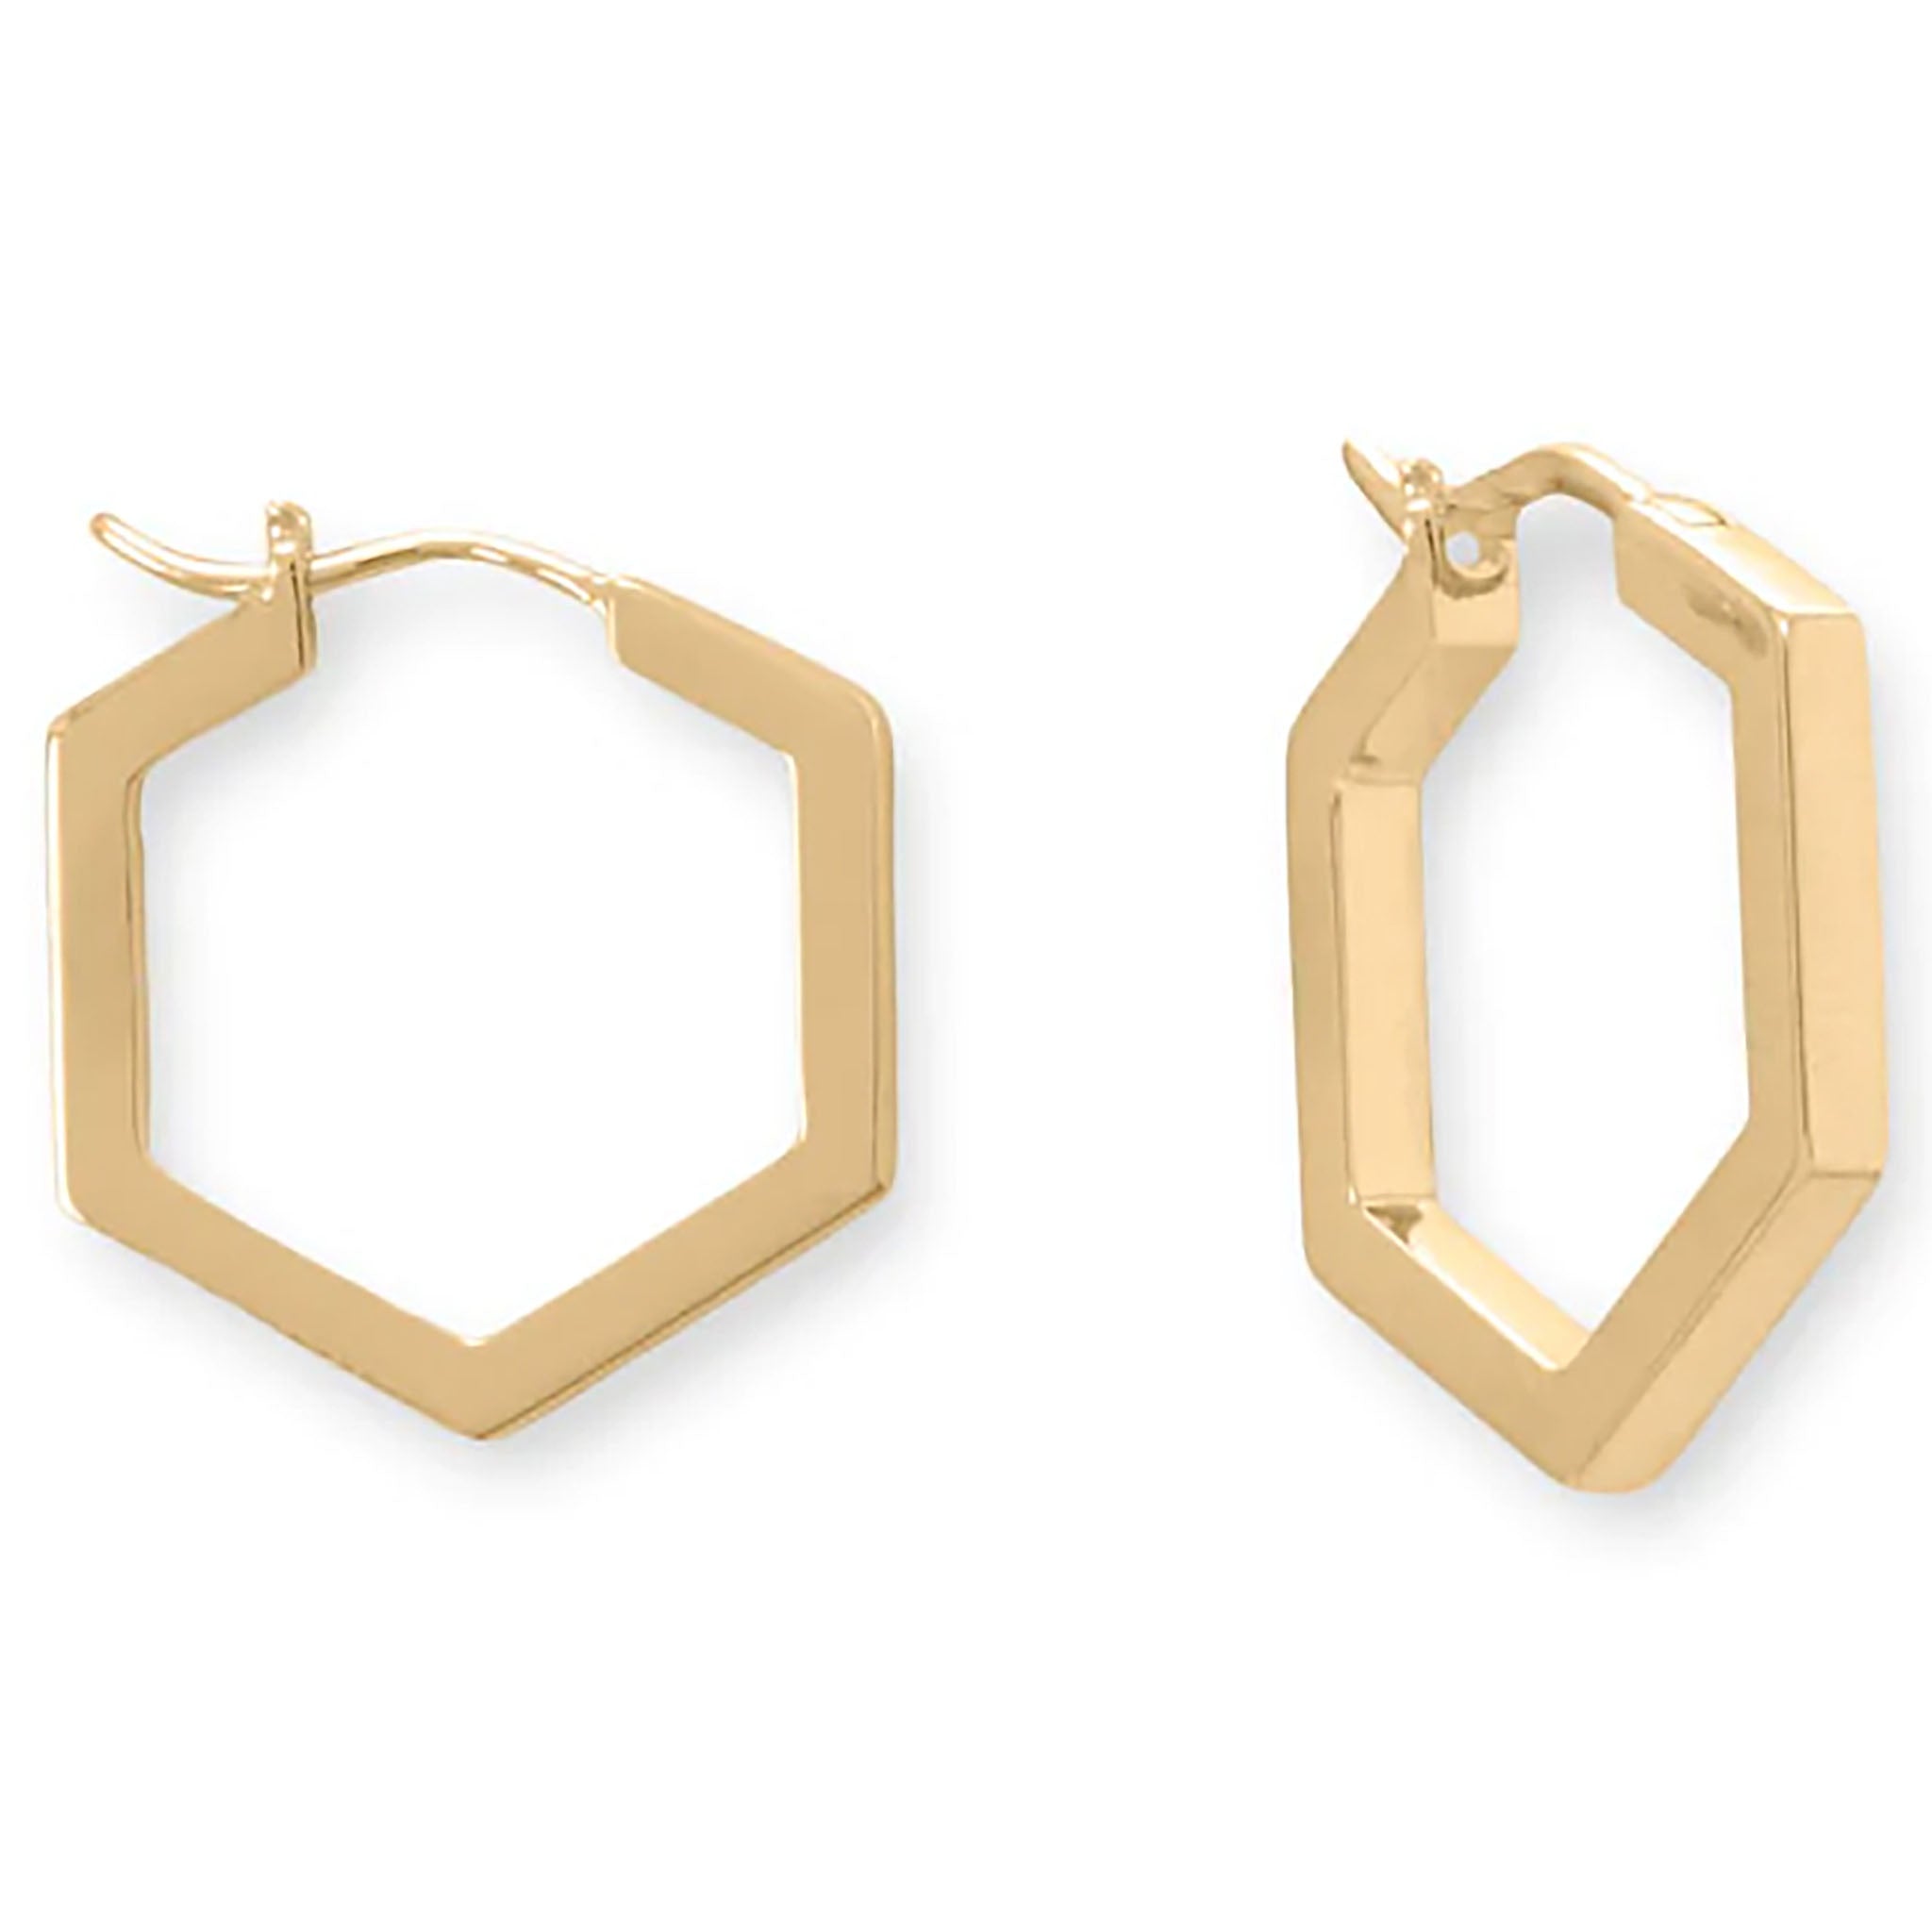 Hexagonal Gold Hoop Earrings